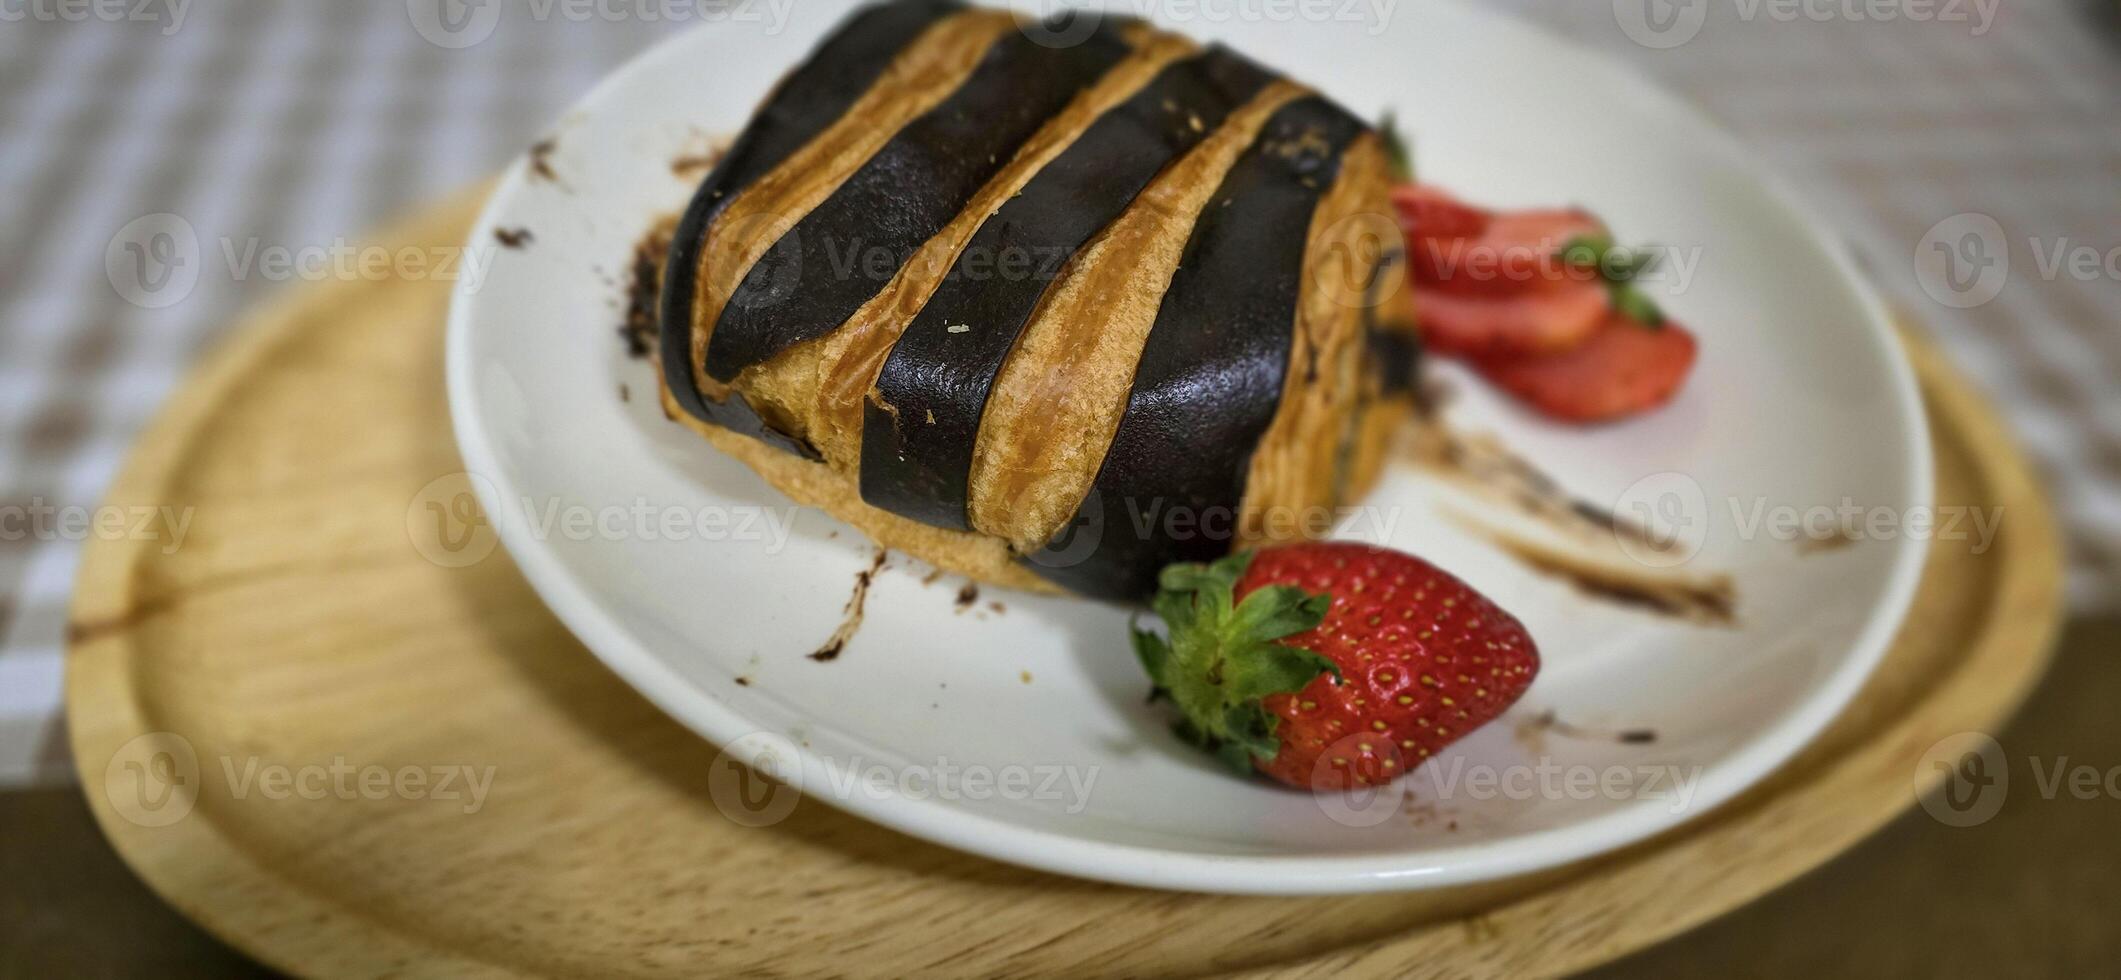 frisch hausgemacht gestreift Schokolade Croissant mit Schokolade Füllung auf ein runden Weiß Platte, serviert mit frisch Erdbeere foto